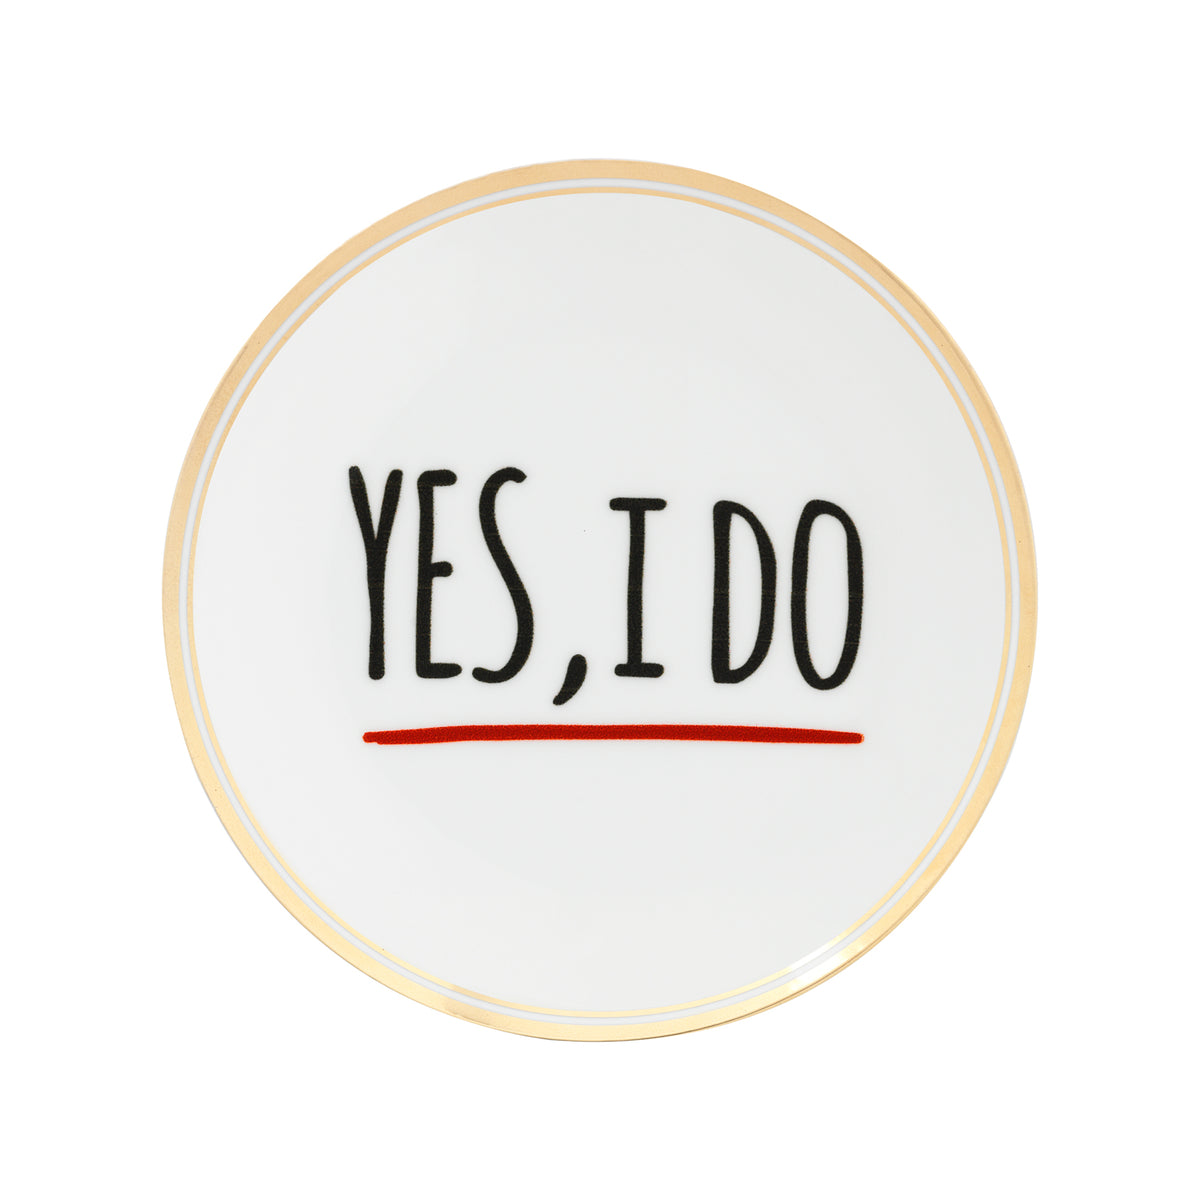 "Yes, I do" Porcelain Plate. 17 cm